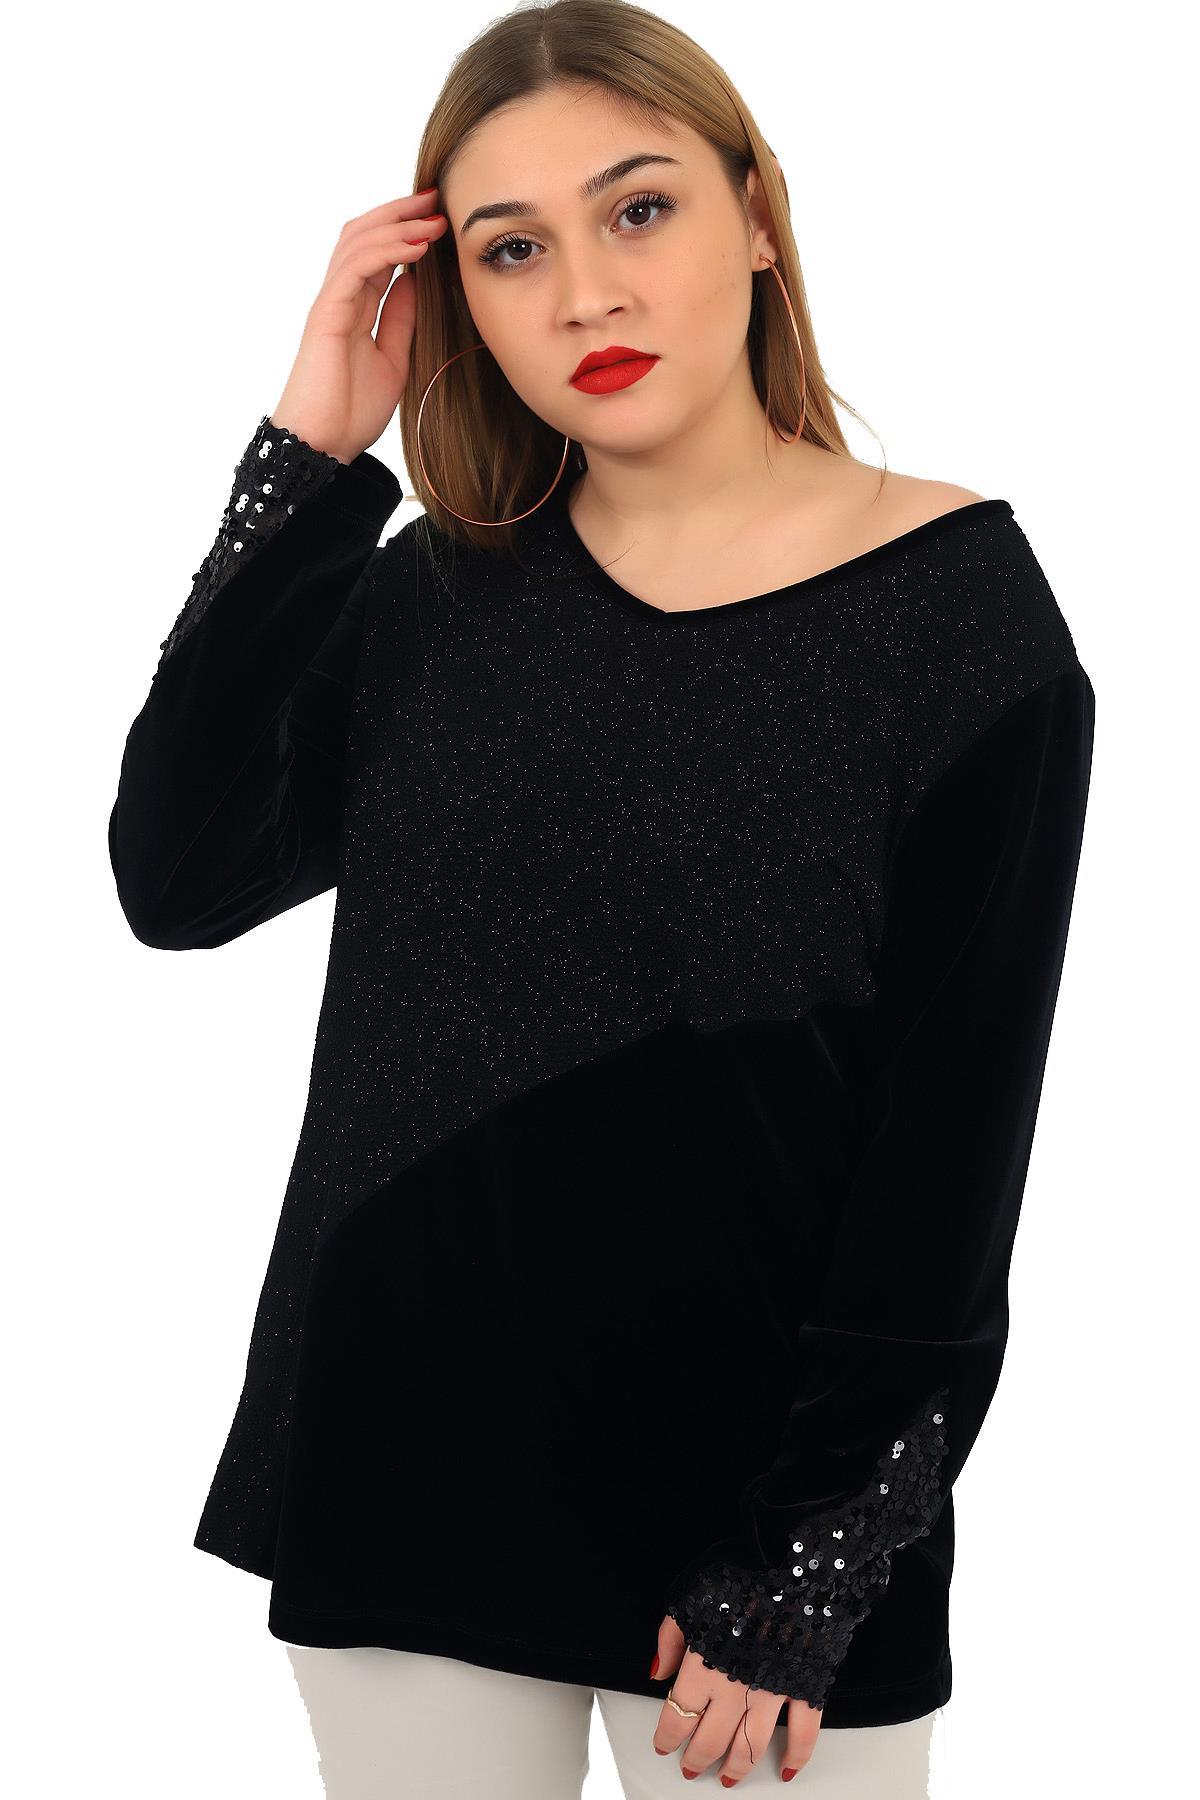 Fierte Kadın Büyük Beden Gömlek Lm35040 Deri Detay Jean İndigo Siyah Büyük Beden Giyim